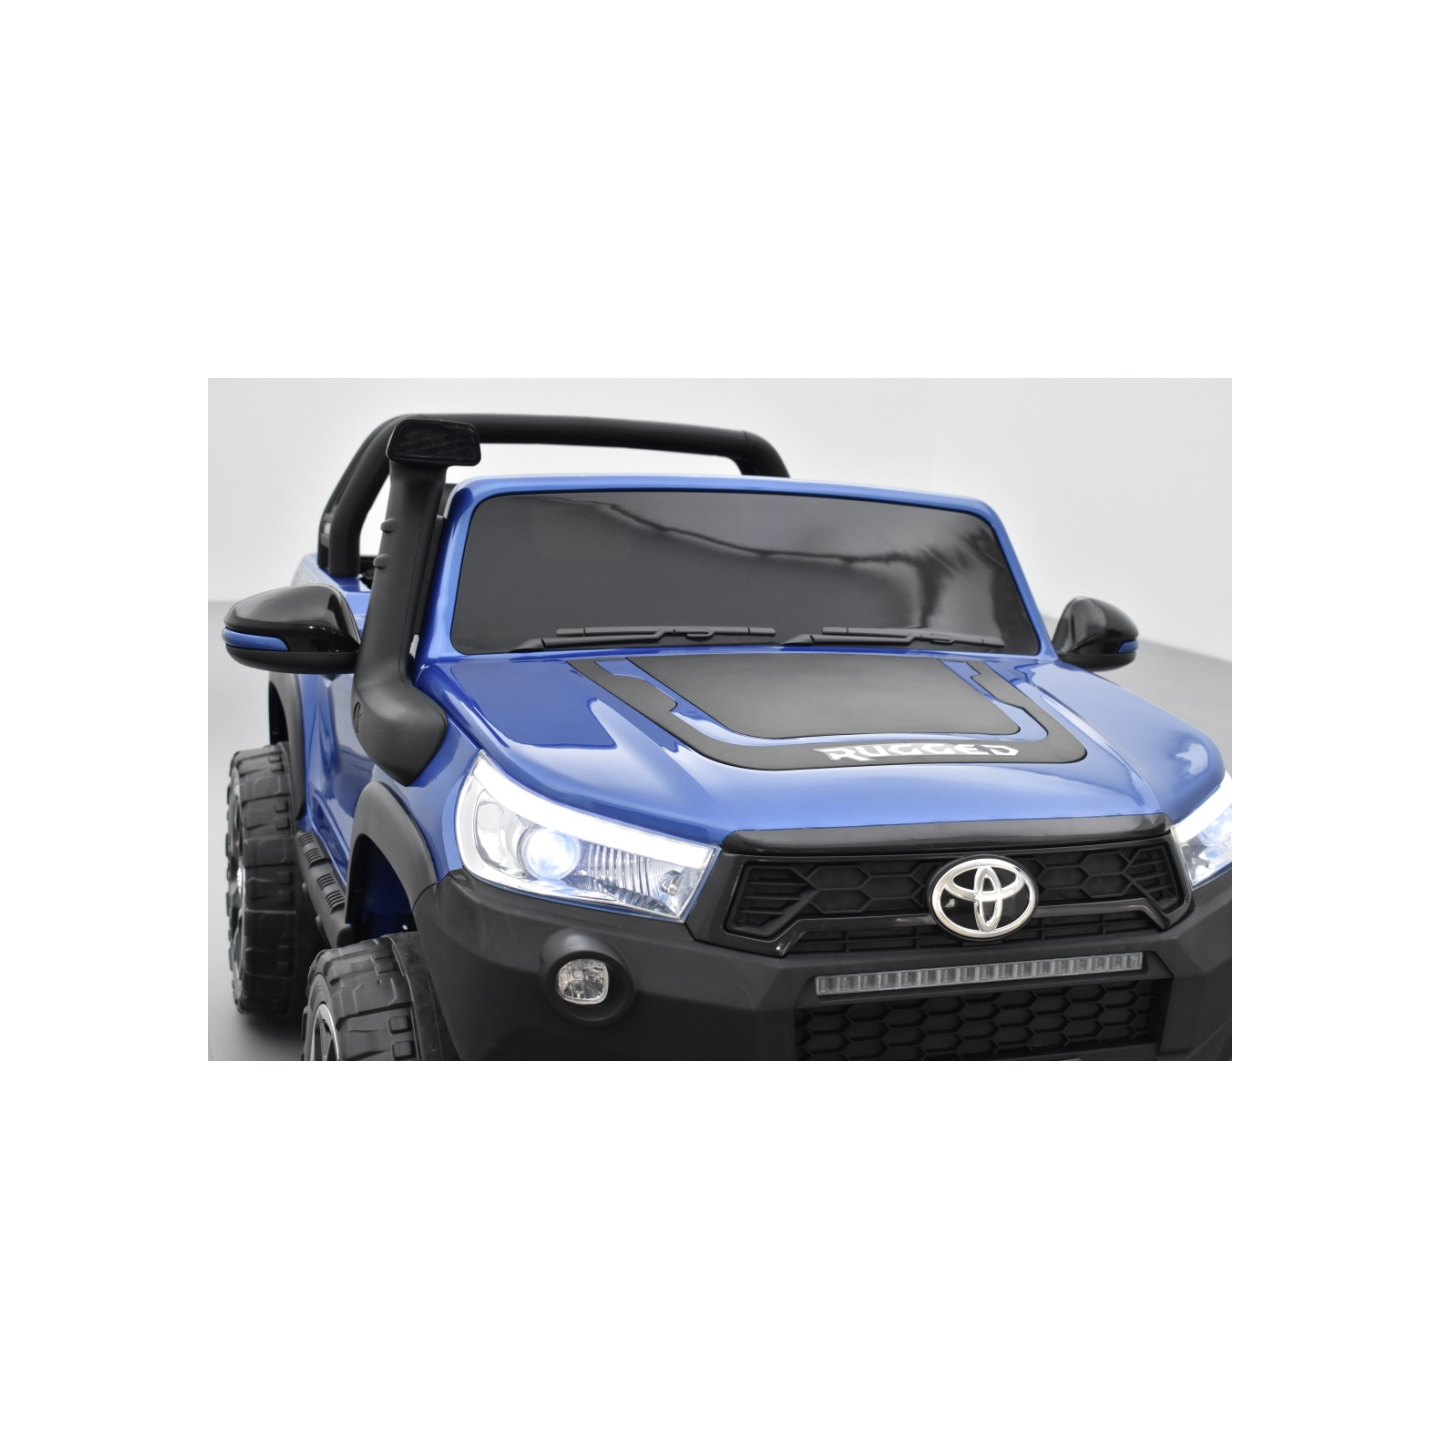 Toyota Hilux bleu 24 Volts électrique pour enfant écran mp4, 4x4 électrique enfant 2 places